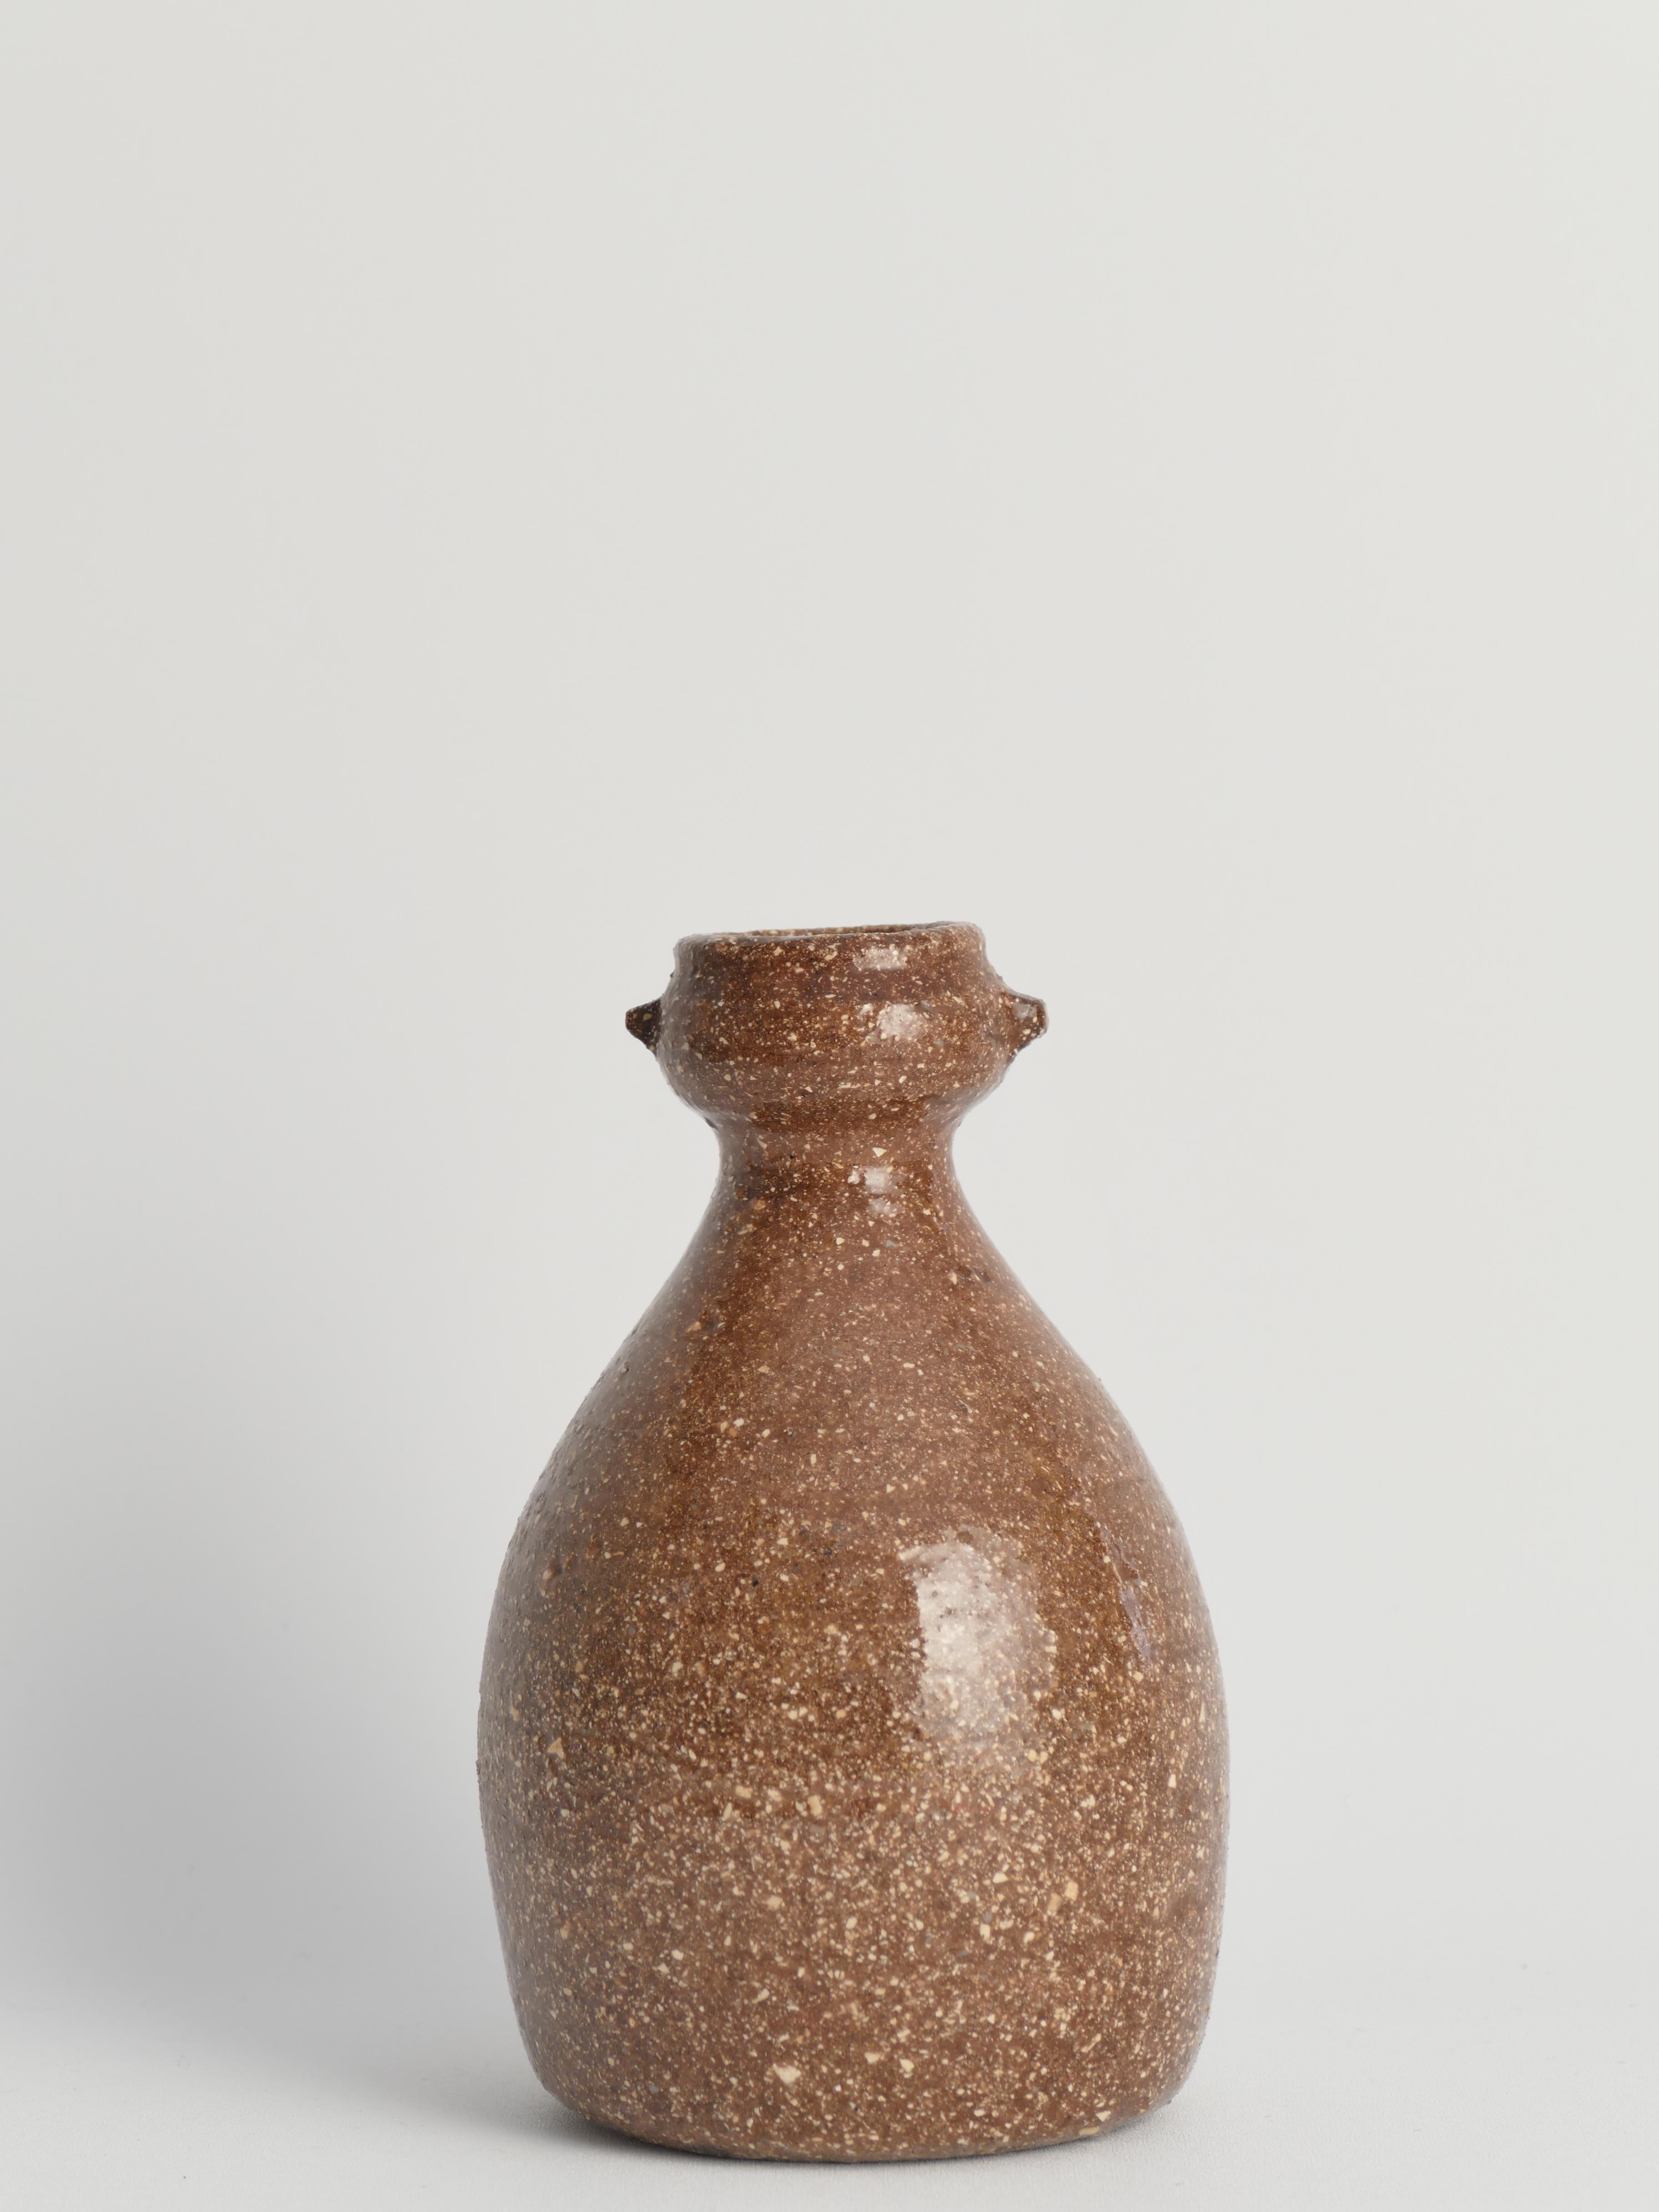 Ce vase exquis en grès fait à la main rappelle la célèbre tradition de la poterie japonaise Shigaraki, réputée pour son utilisation de l'argile sableuse locale provenant du lit du lac Biwa, qui confère aux céramiques une chaude teinte orangée et une